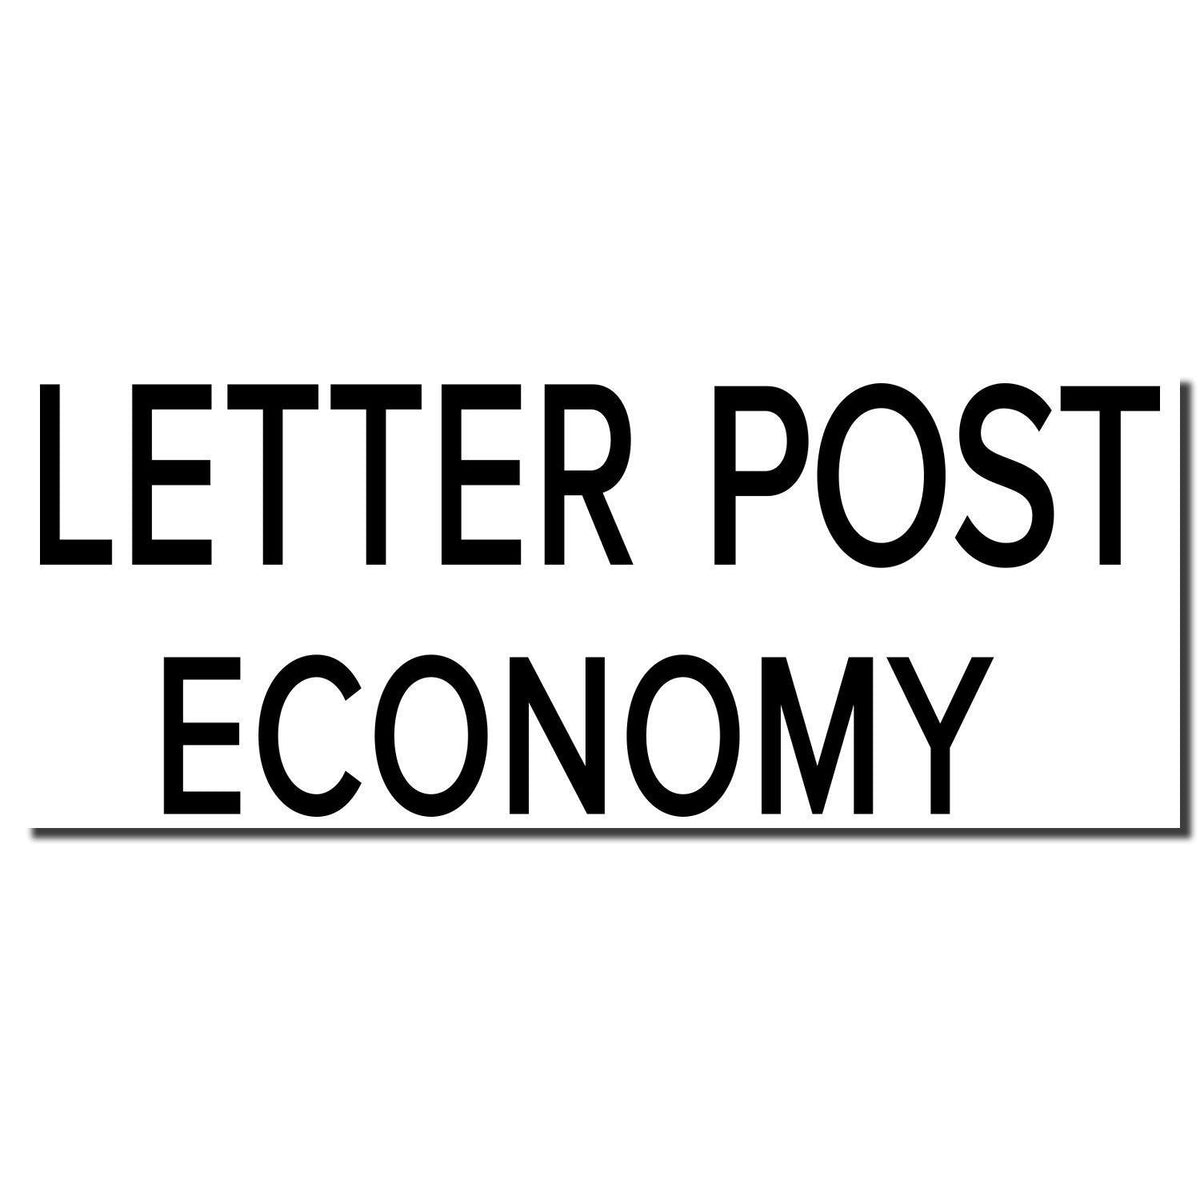 Enlarged Imprint Large Letter Post Economy Rubber Stamp Sample